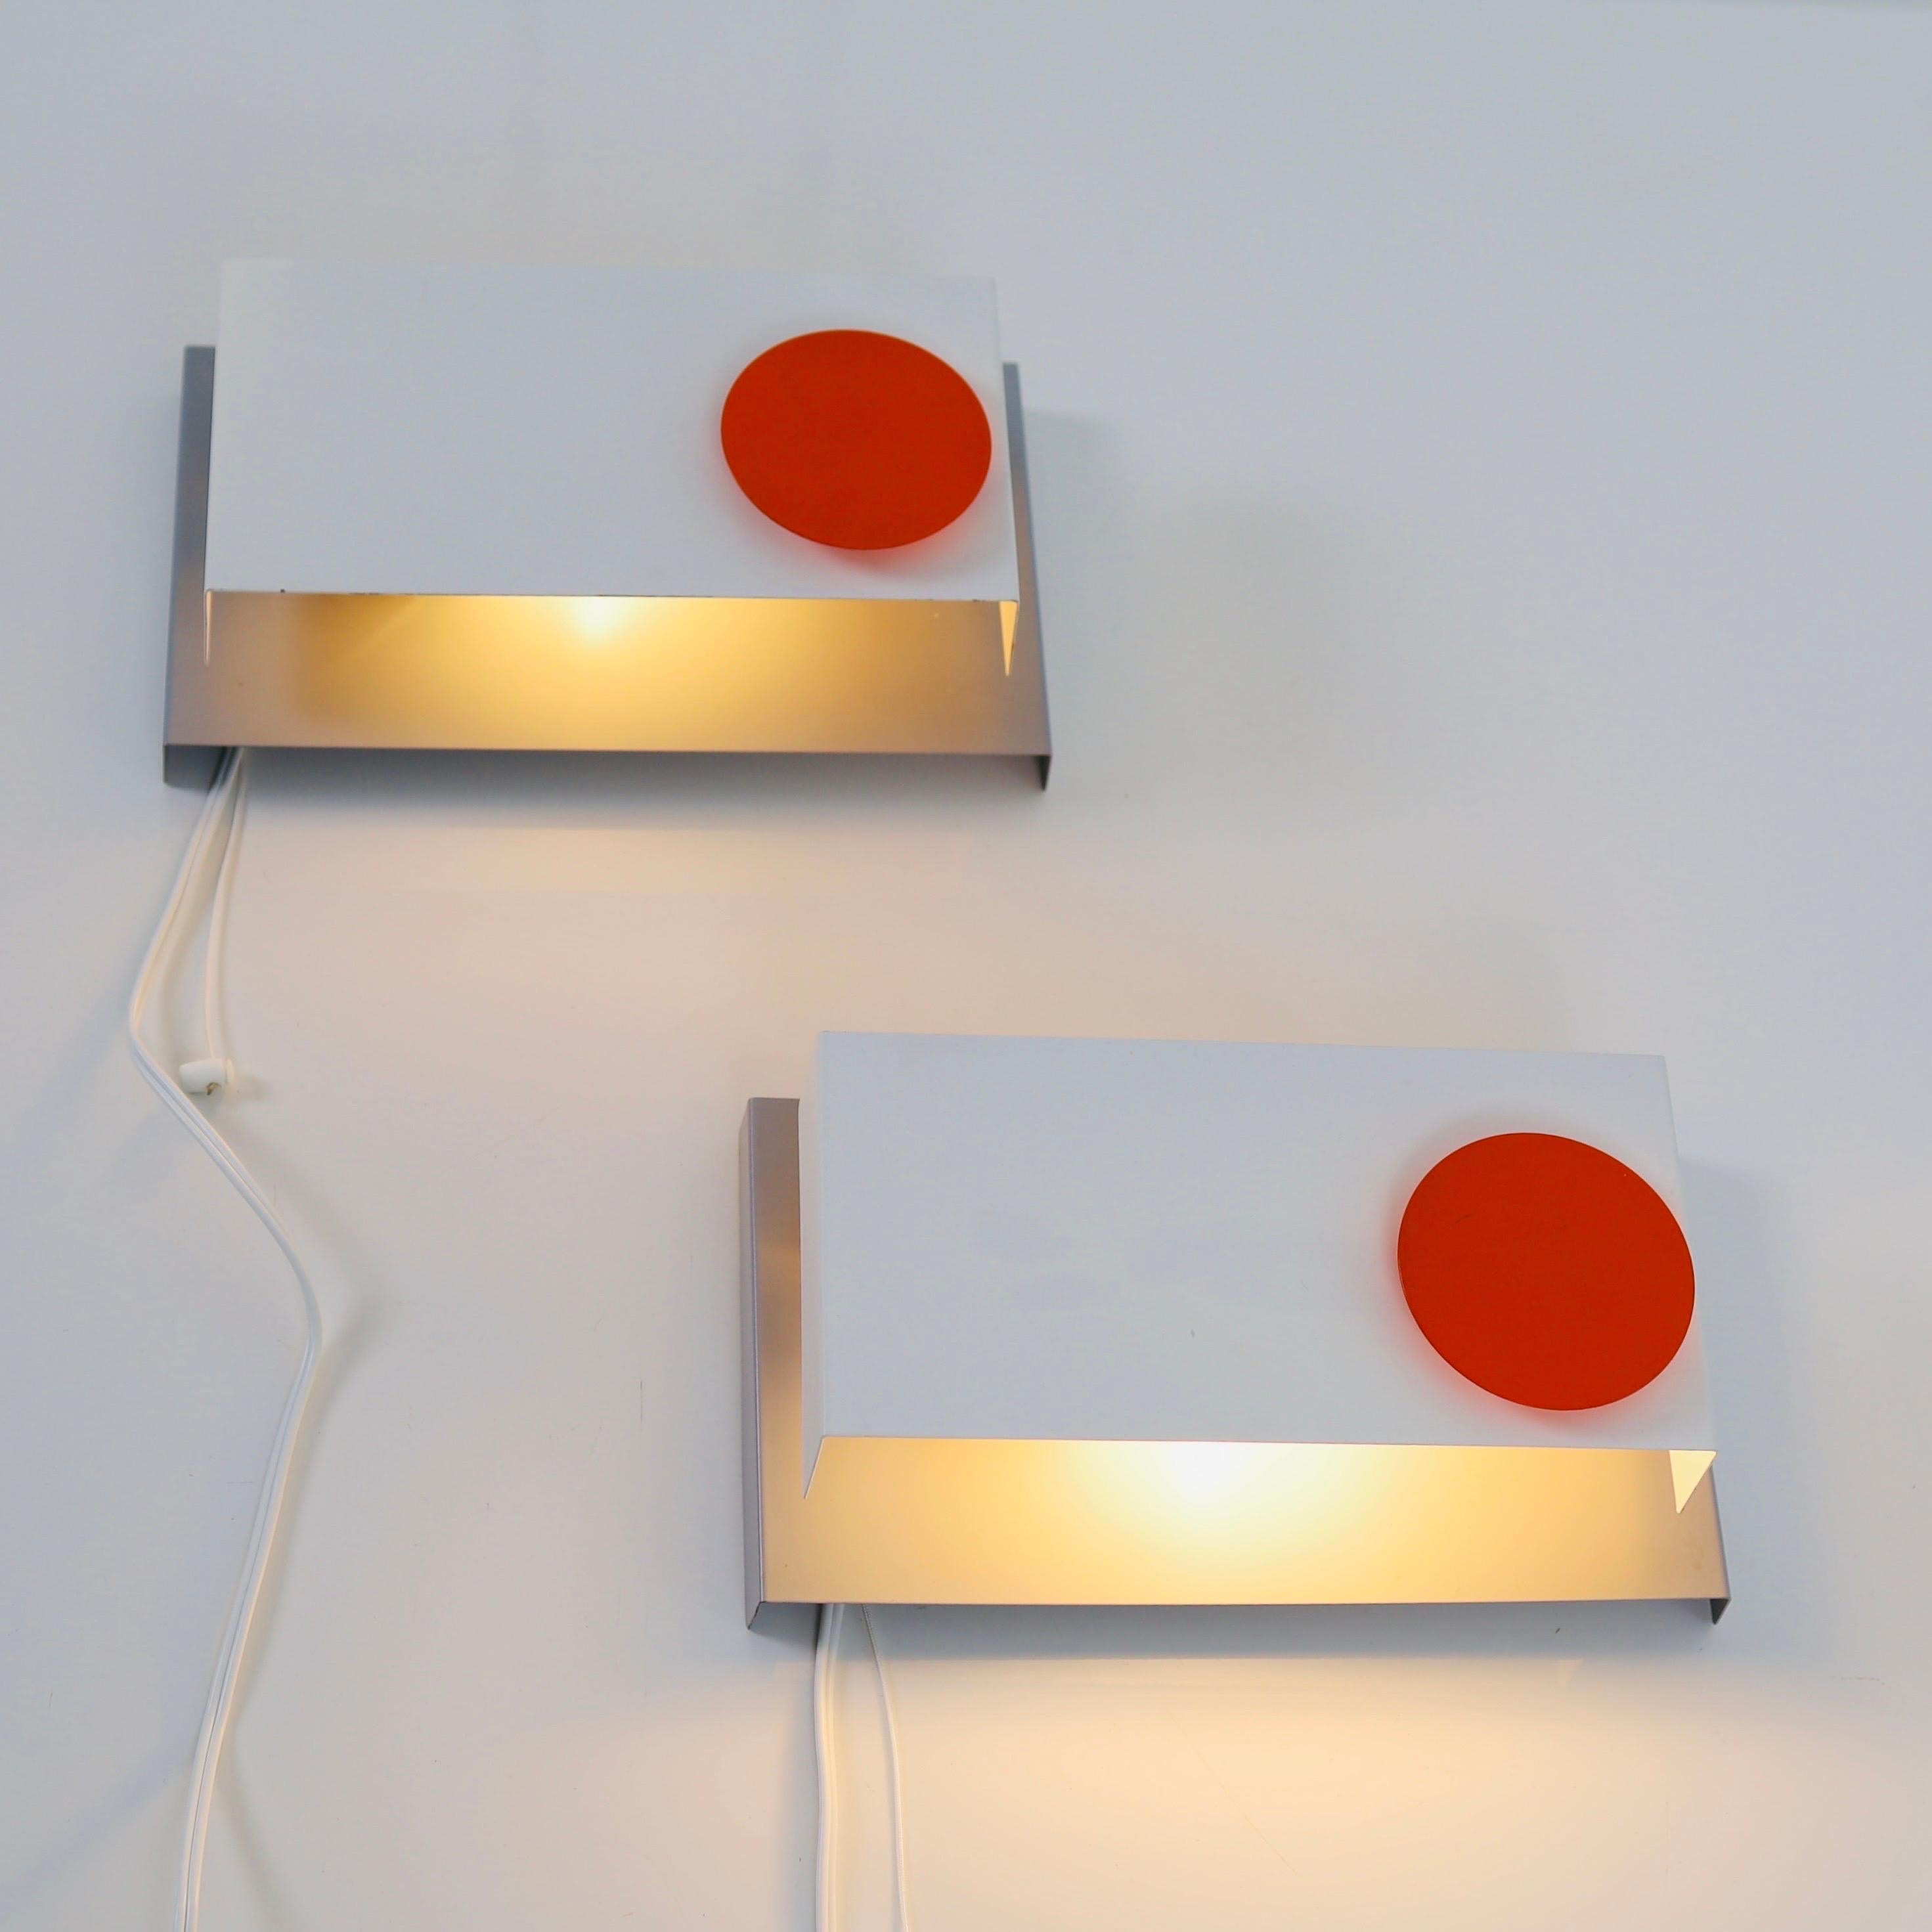 Ensemble de lampes de chevet conçues par Svend Aage Holm Sørensen dans les années 1960. Il s'agit d'un ensemble rare en très bon état.

* Une paire (2) de lampes de nuit grises, blanches et orange avec interrupteur à tirette. Fonction de basculement